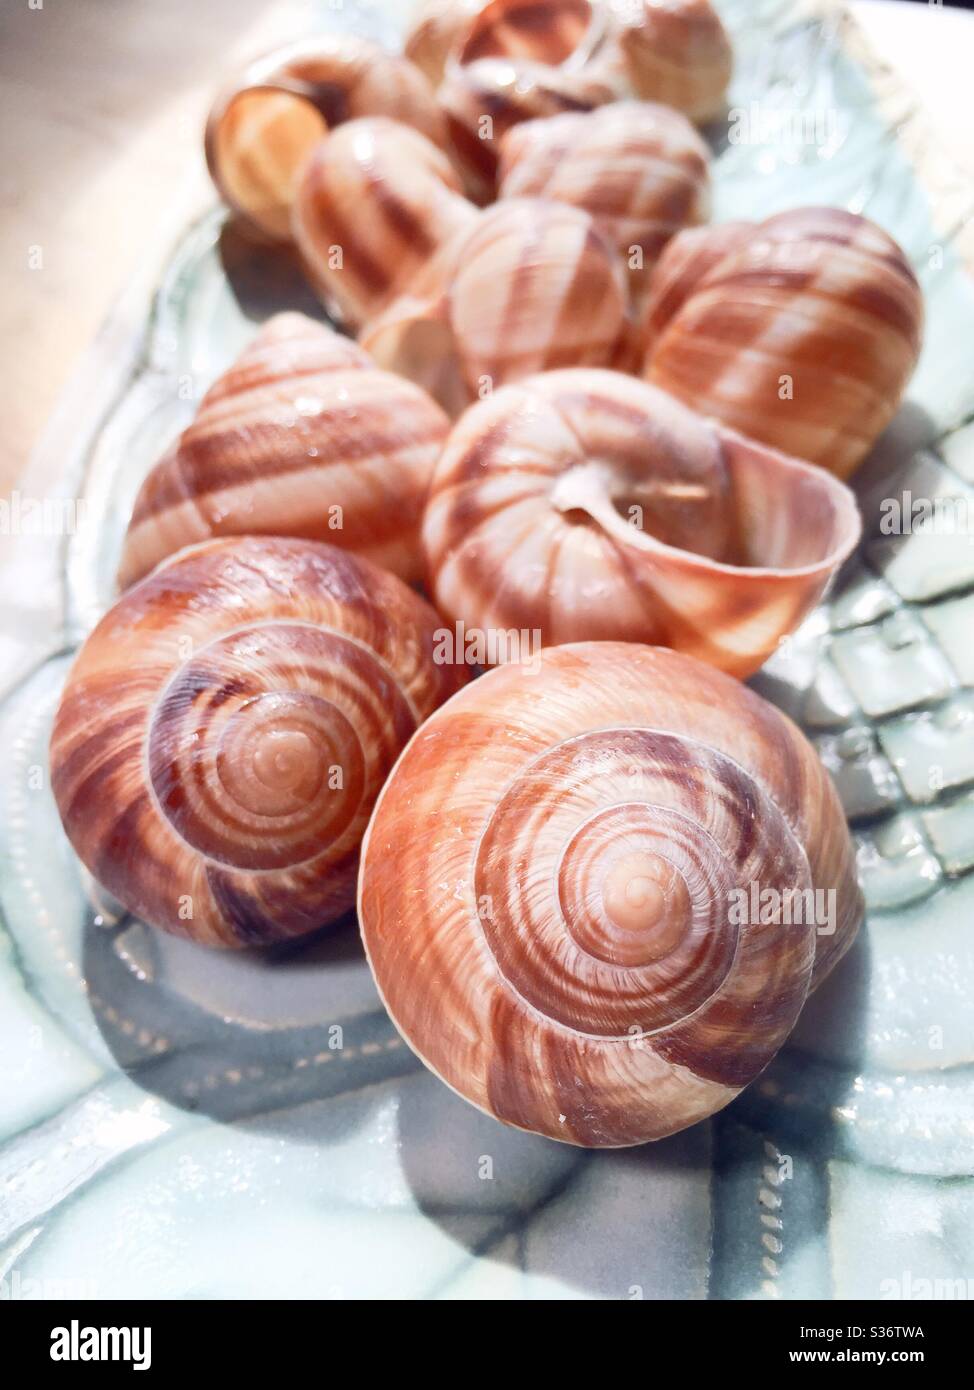 Le conchiglie a lumaca vengono utilizzate nella preparazione e presentazione dell'iconico scargot francese Foto Stock